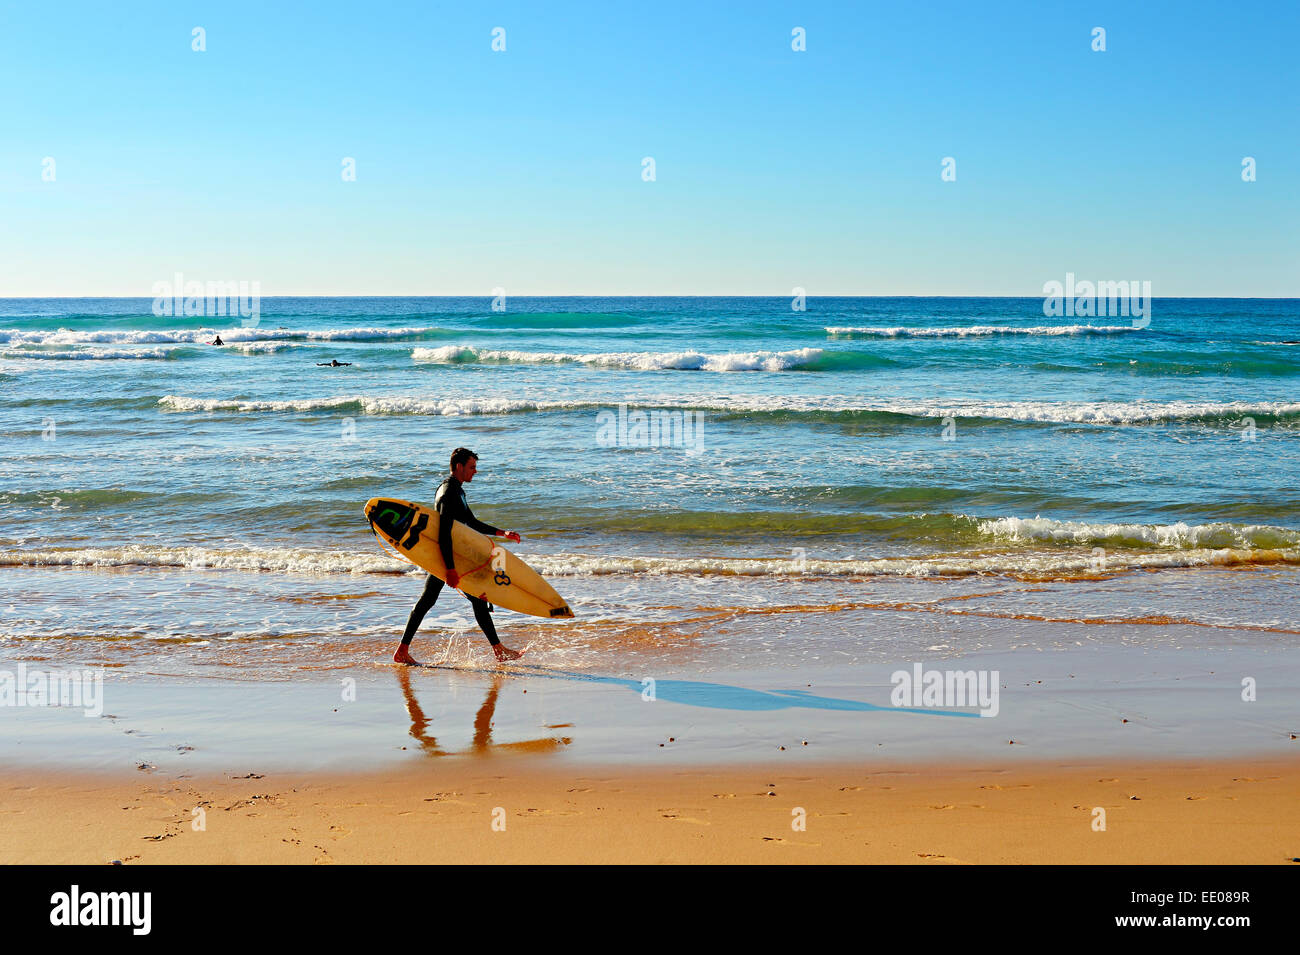 Surfer no identificadas caminar en la playa. Foto de stock